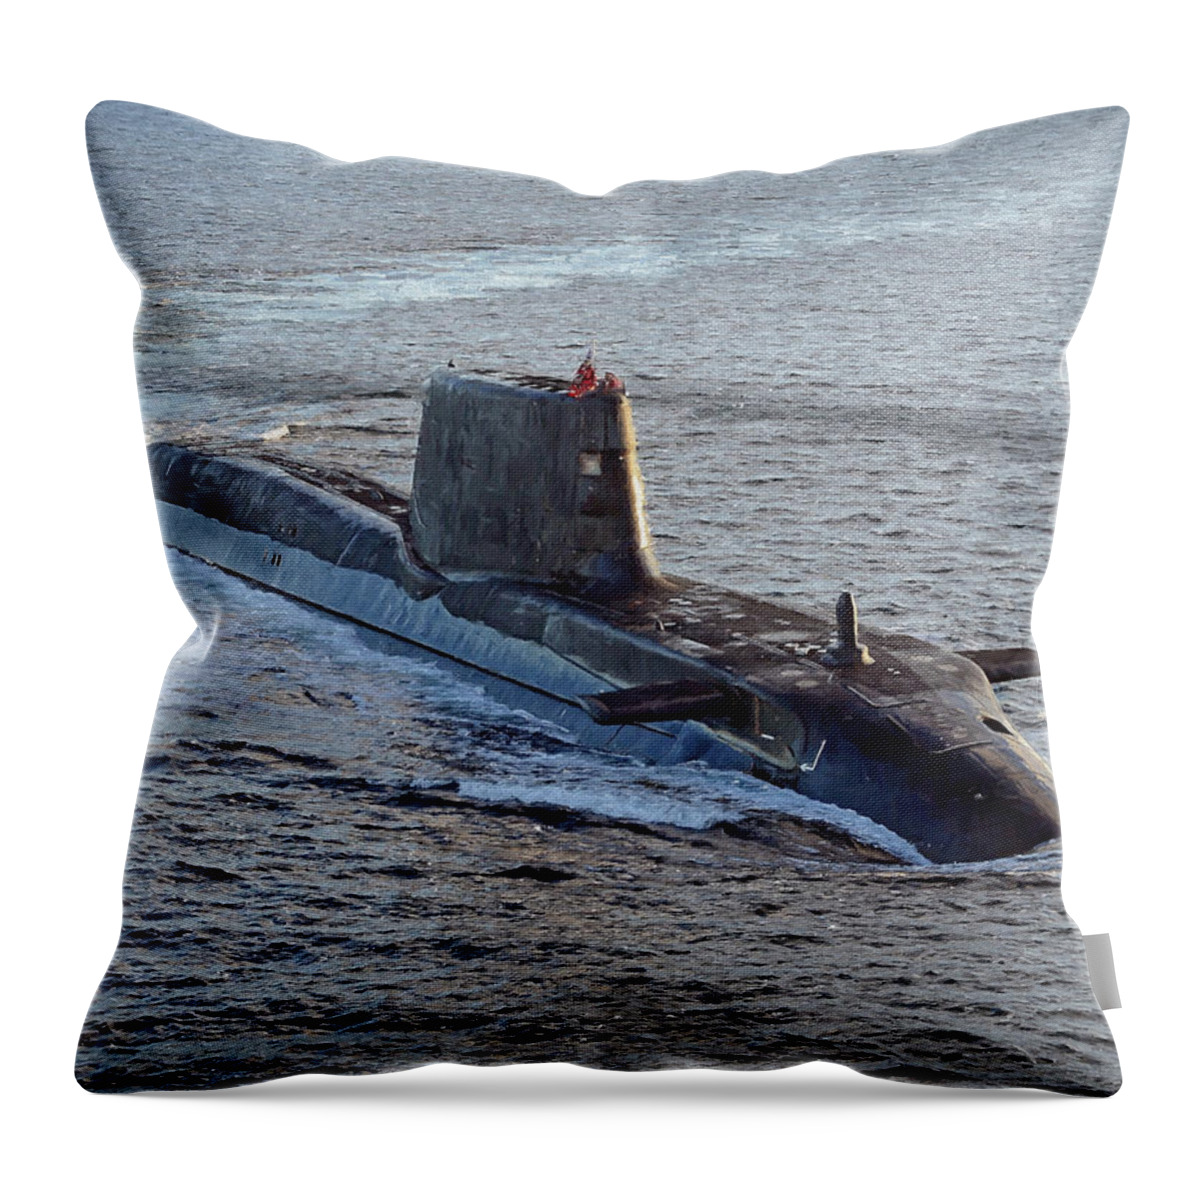 Astute Class Throw Pillow featuring the digital art HMS Ambush by Roy Pedersen